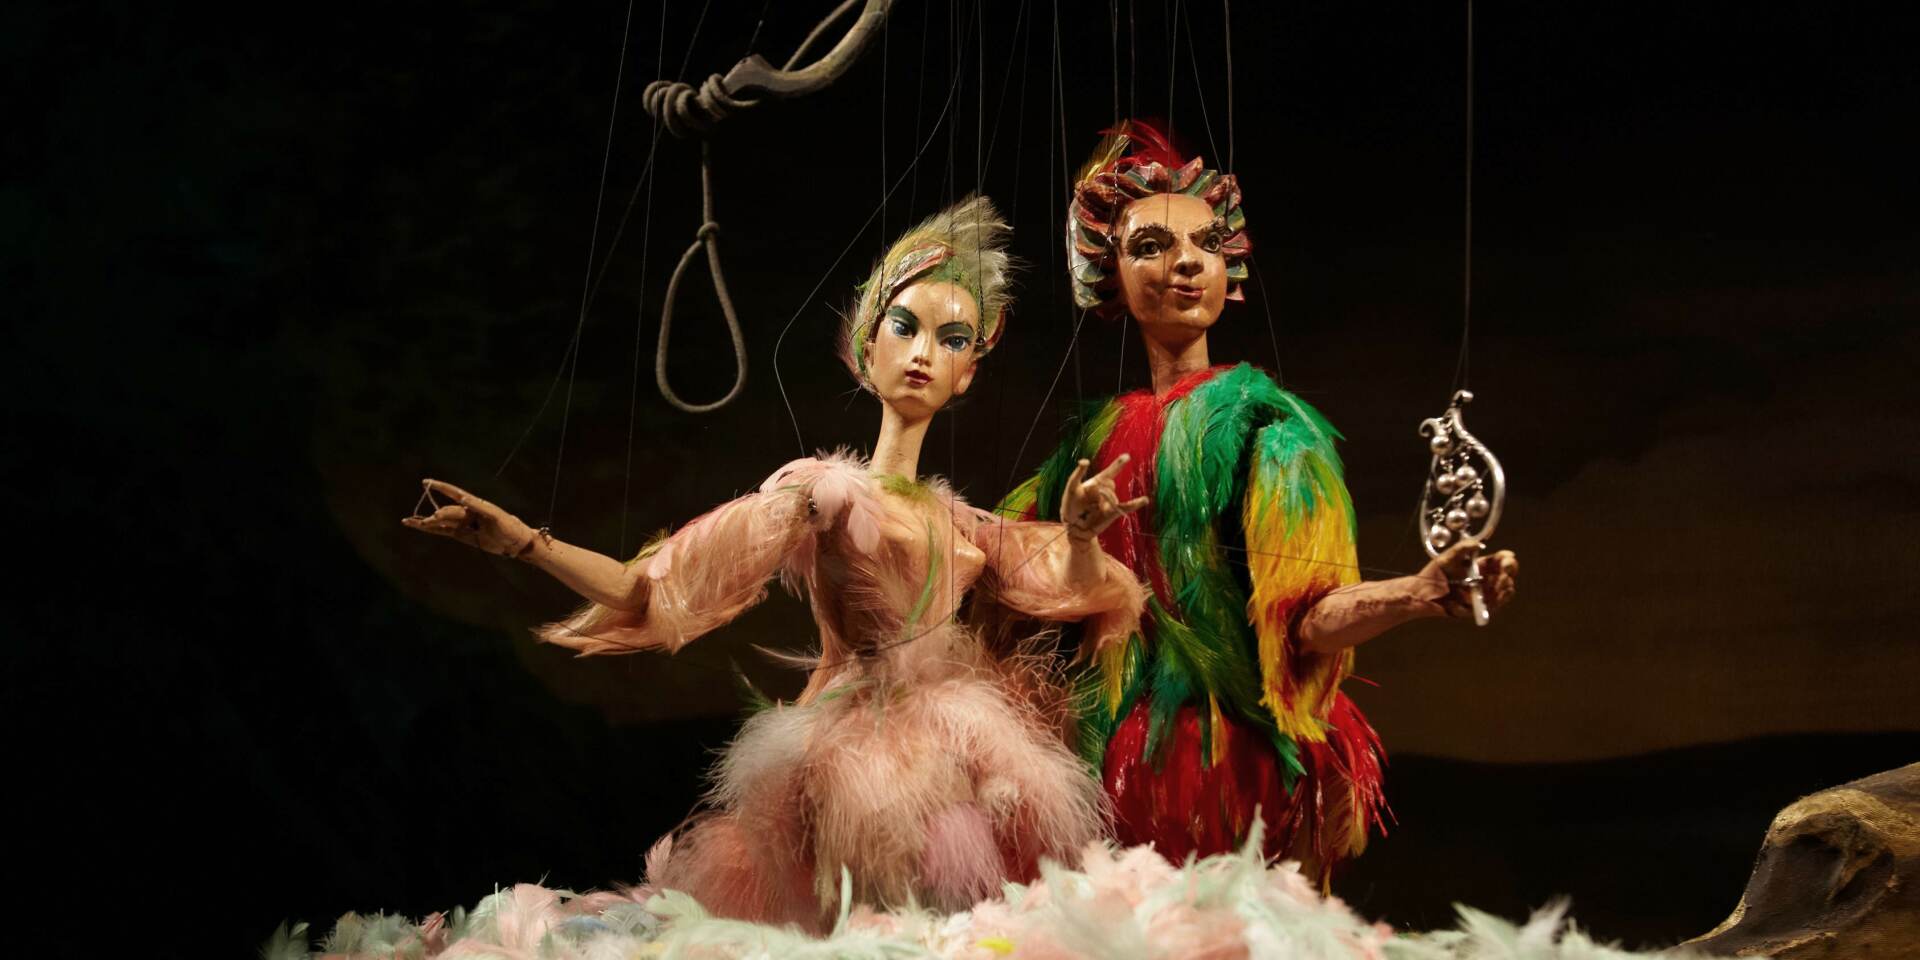 Salzburg Marionette Theatre - Magic Flute - Papageno and Papagena © Salzburger Marionettentheater